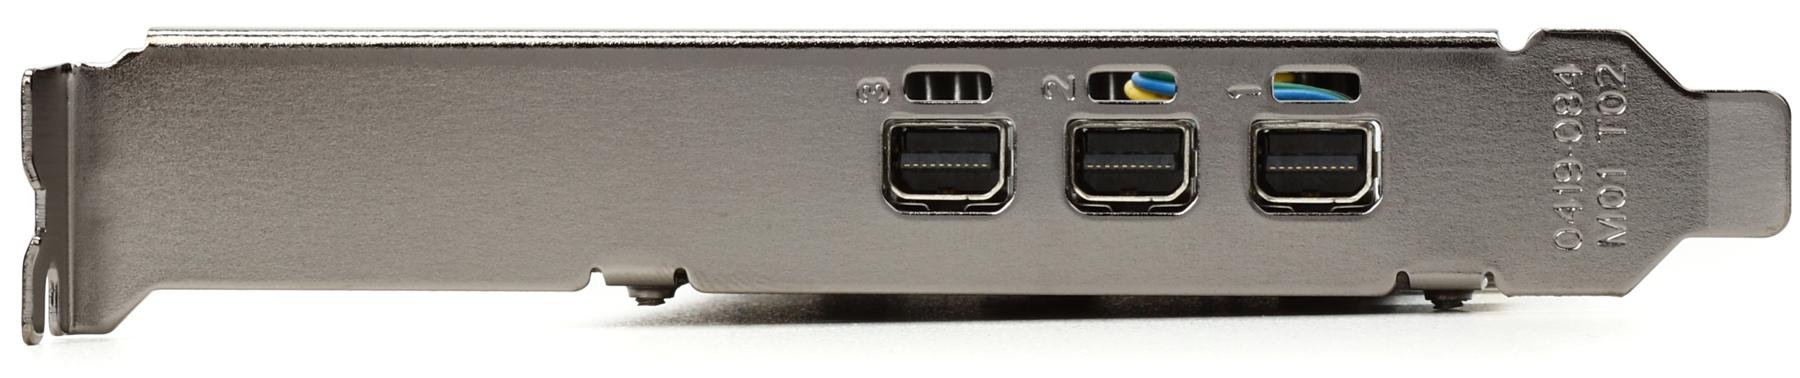 PNY NVIDIA Quadro P400 PCIe Video Card w/ 3x Mini DisplayPort